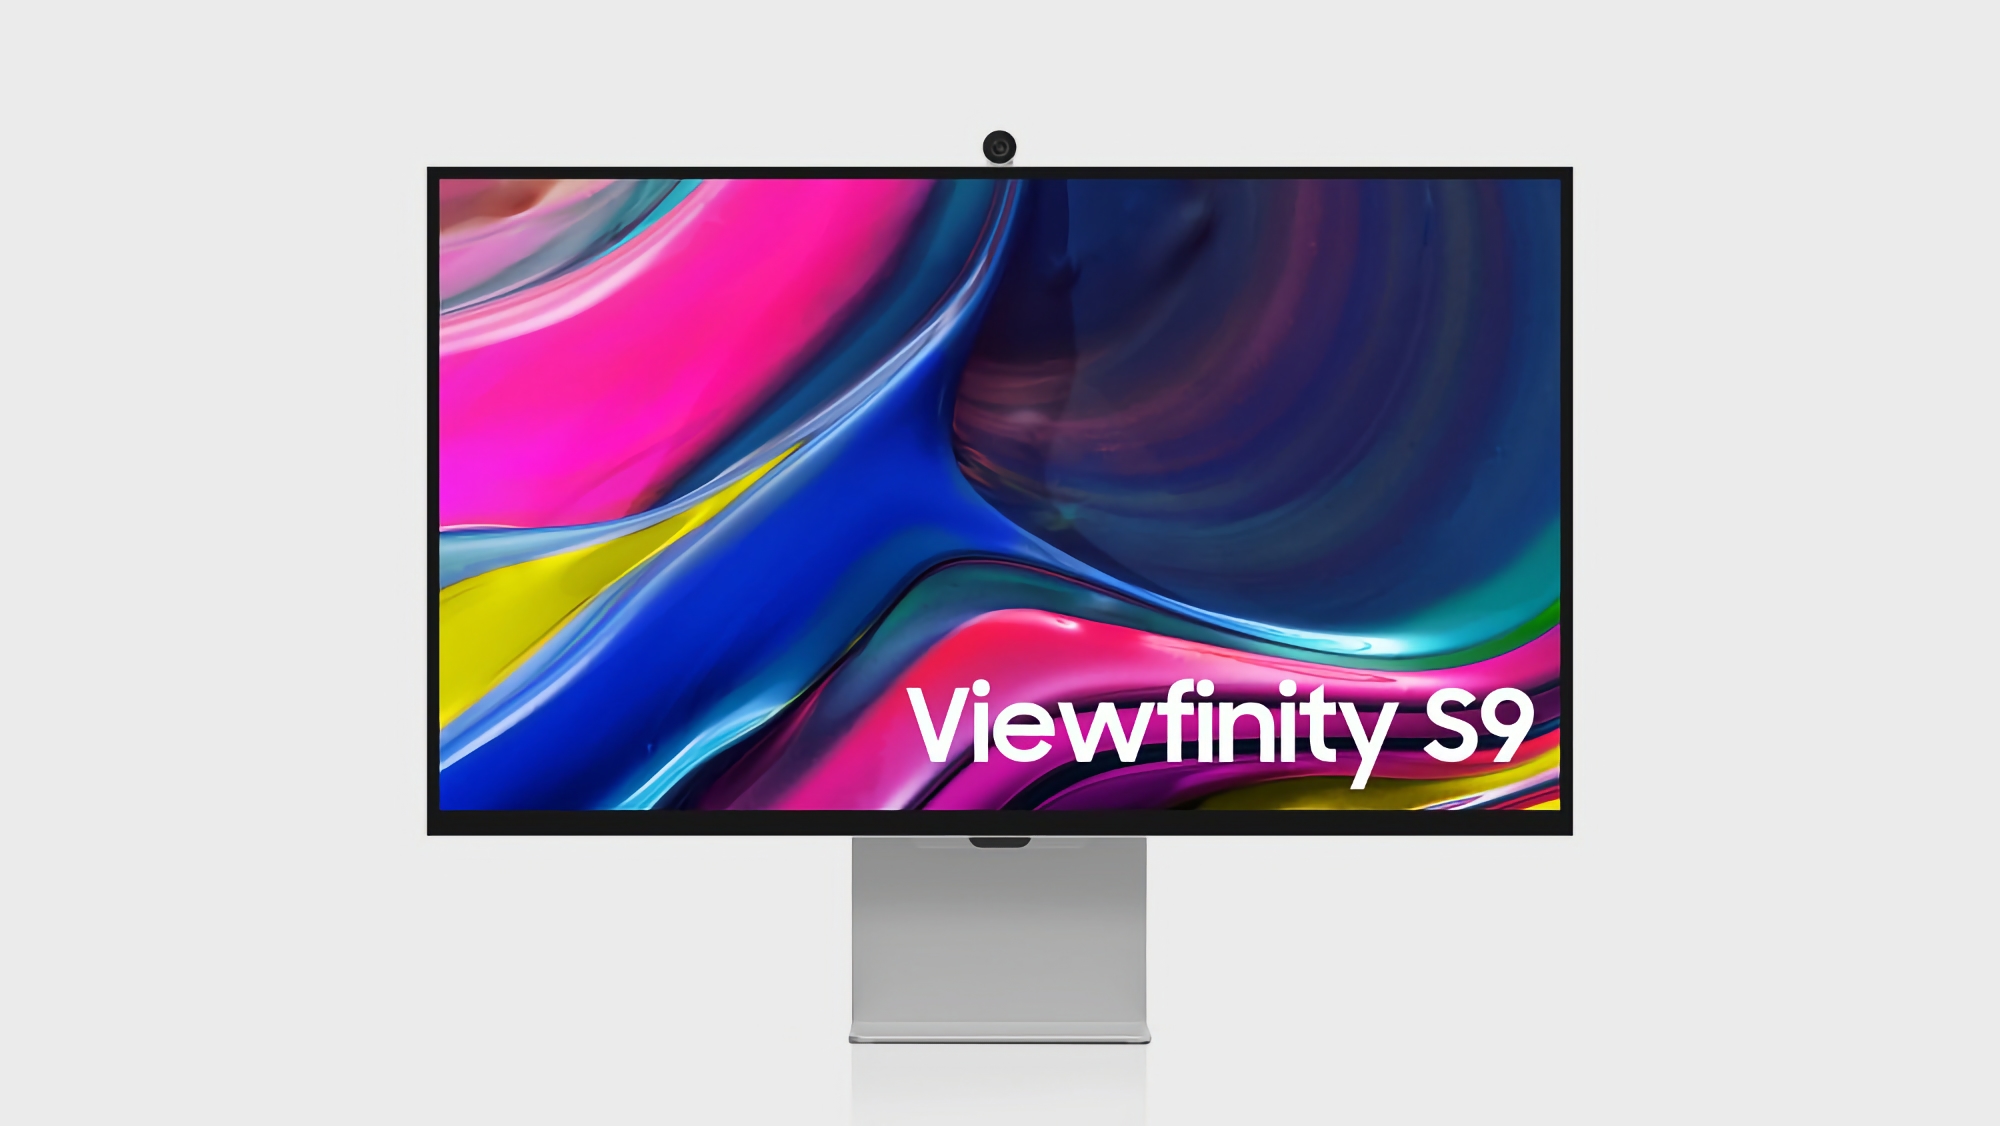 Dagens erbjudande: Samsung ViewFinity S9-monitor kan köpas på Amazon med en rabatt på över 30%